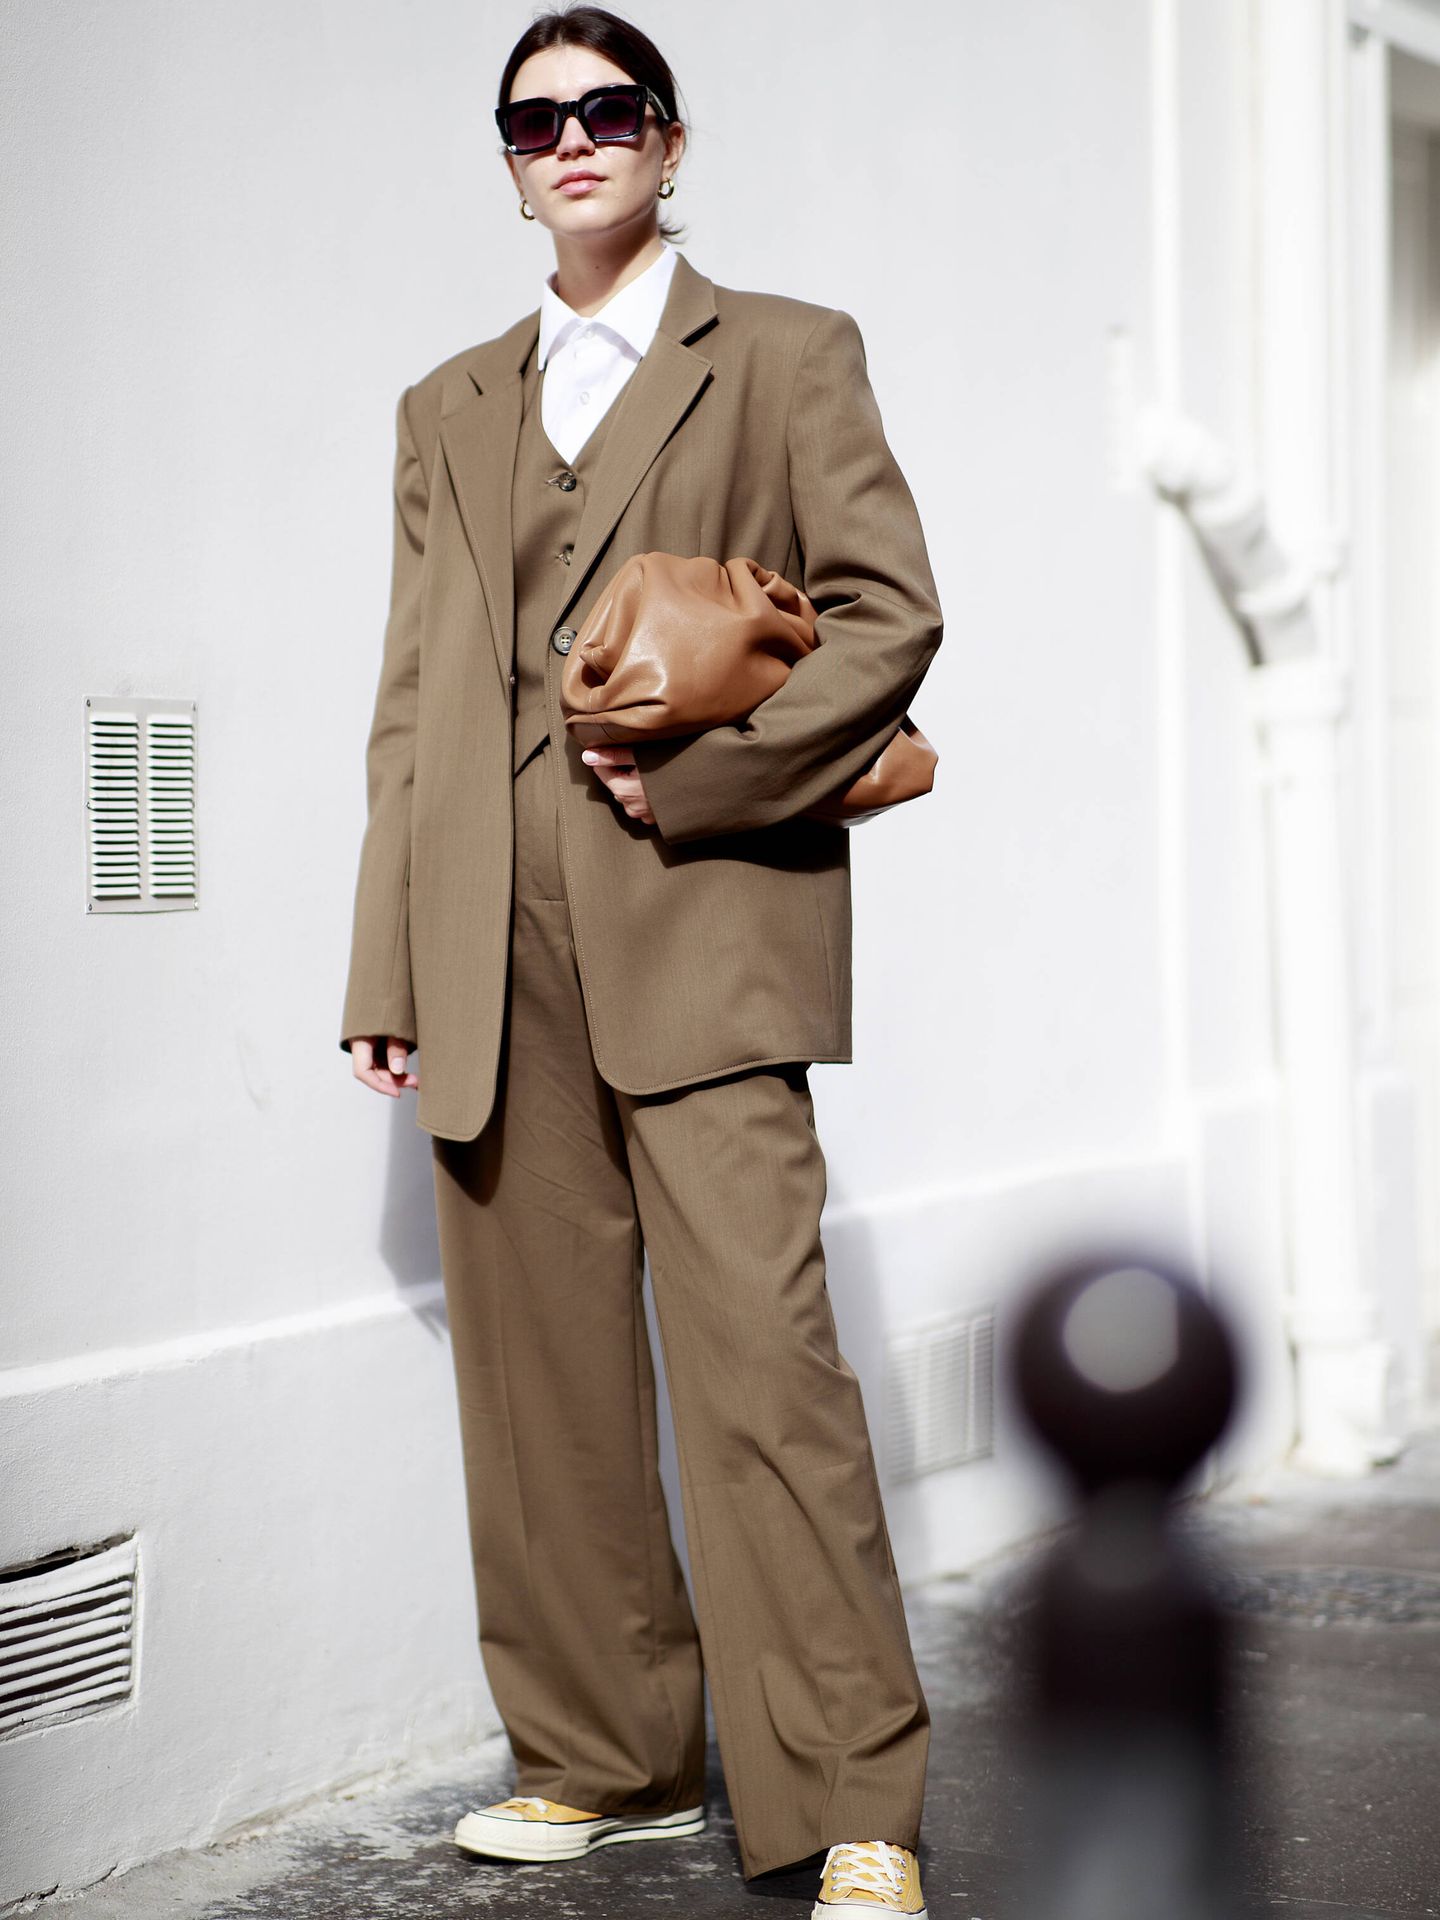 Una prescriptora en París con un traje marrón. (Imaxtree)